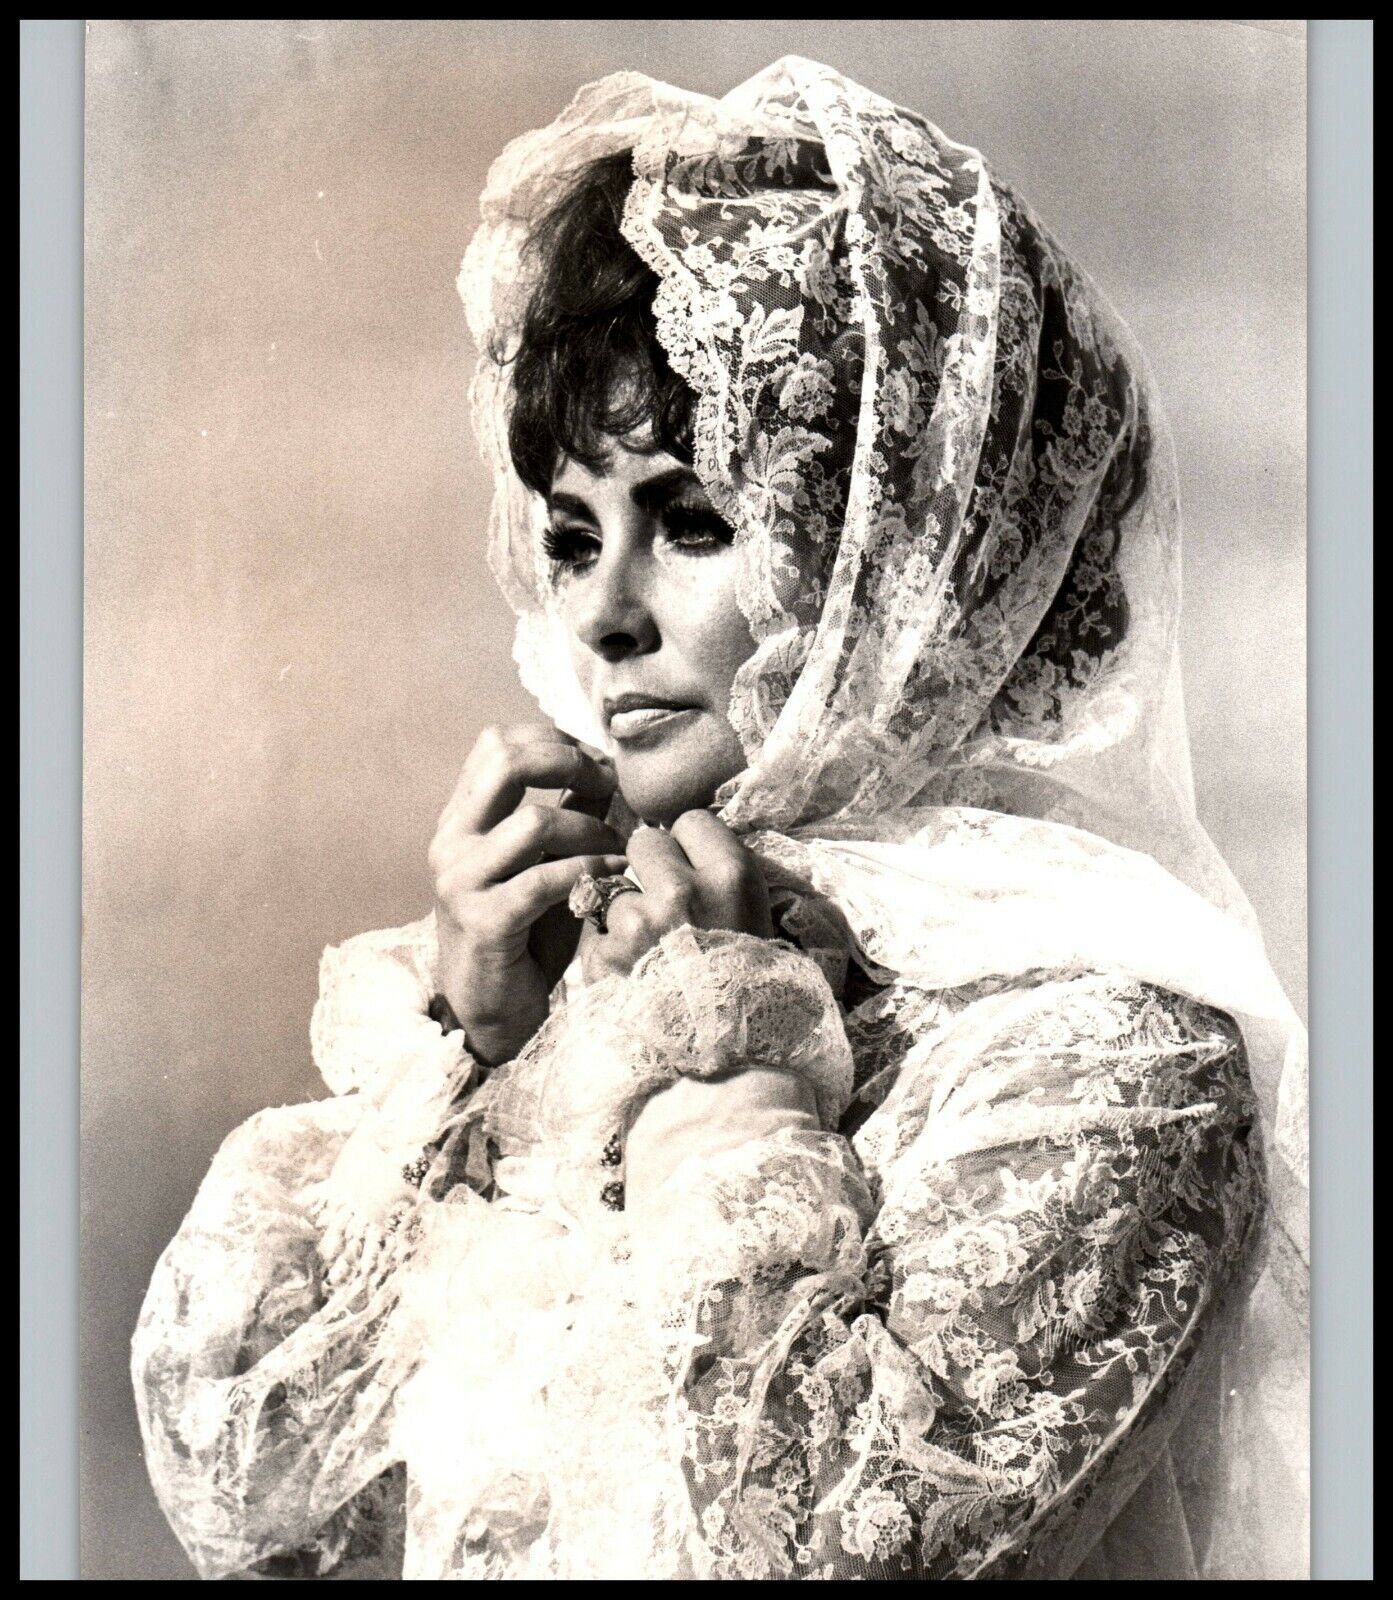 GLAMOROUS VIOLET-EYED ELIZABETH TAYLOR STYLISH POSE 1950s ORIGINAL PHOTO C 14